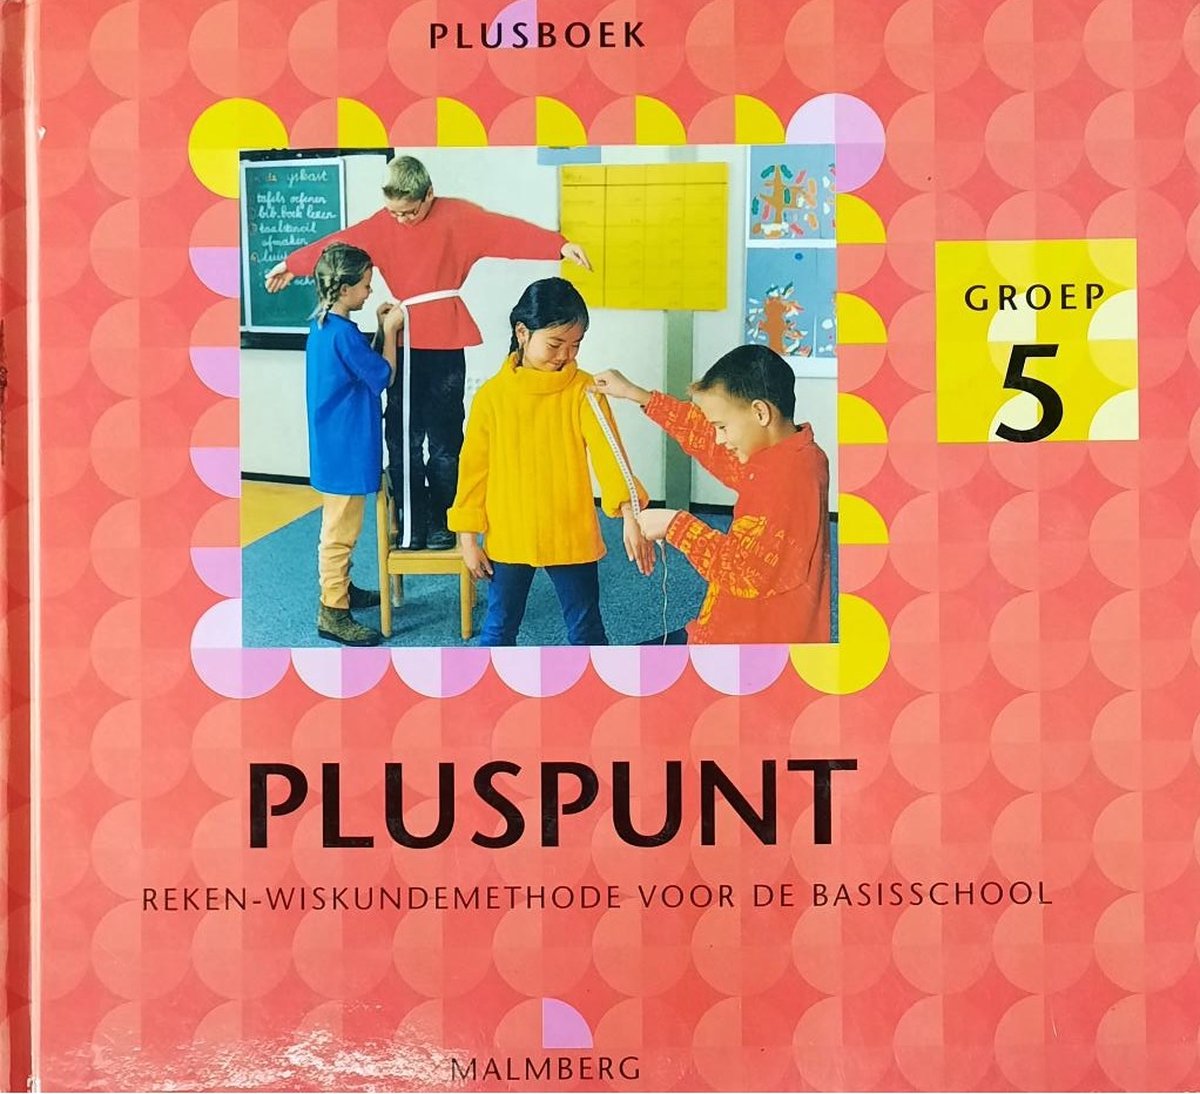 Pluspunt: Plusboek reken-wiskundemethode voor de basisschool - groep 5